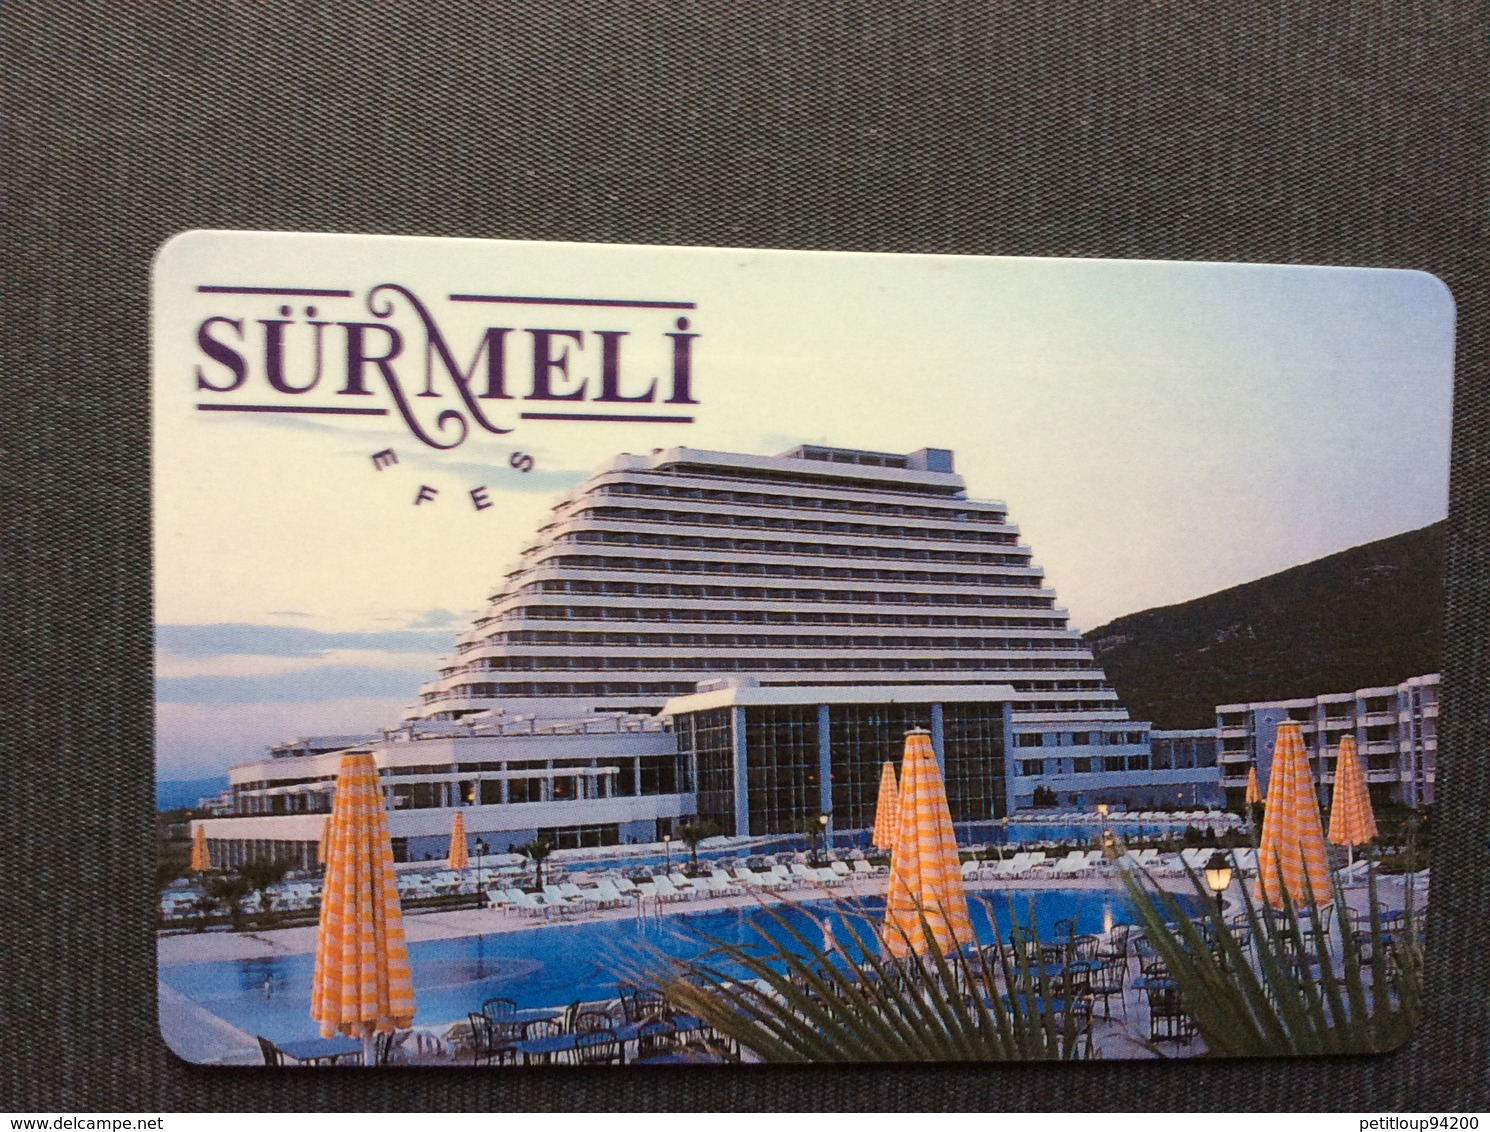 CLE D’HOTEL SURMELI  Ismir  TURQUIE - Hotelzugangskarten